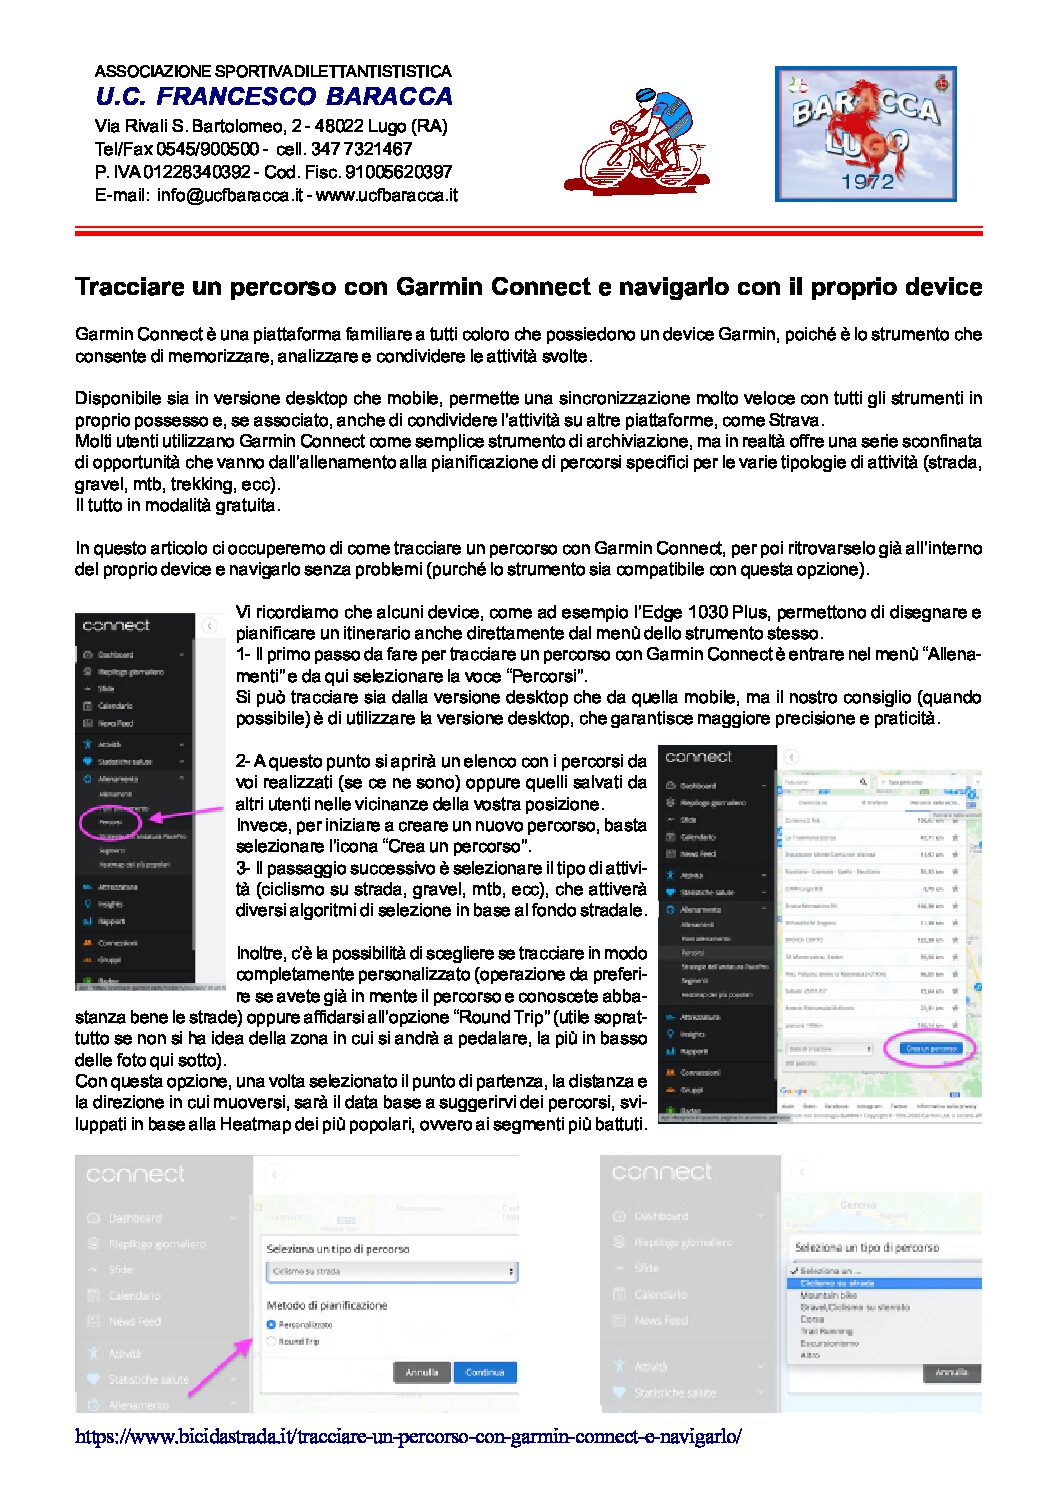 Tracciare un percorso con Garmin Connect pdf